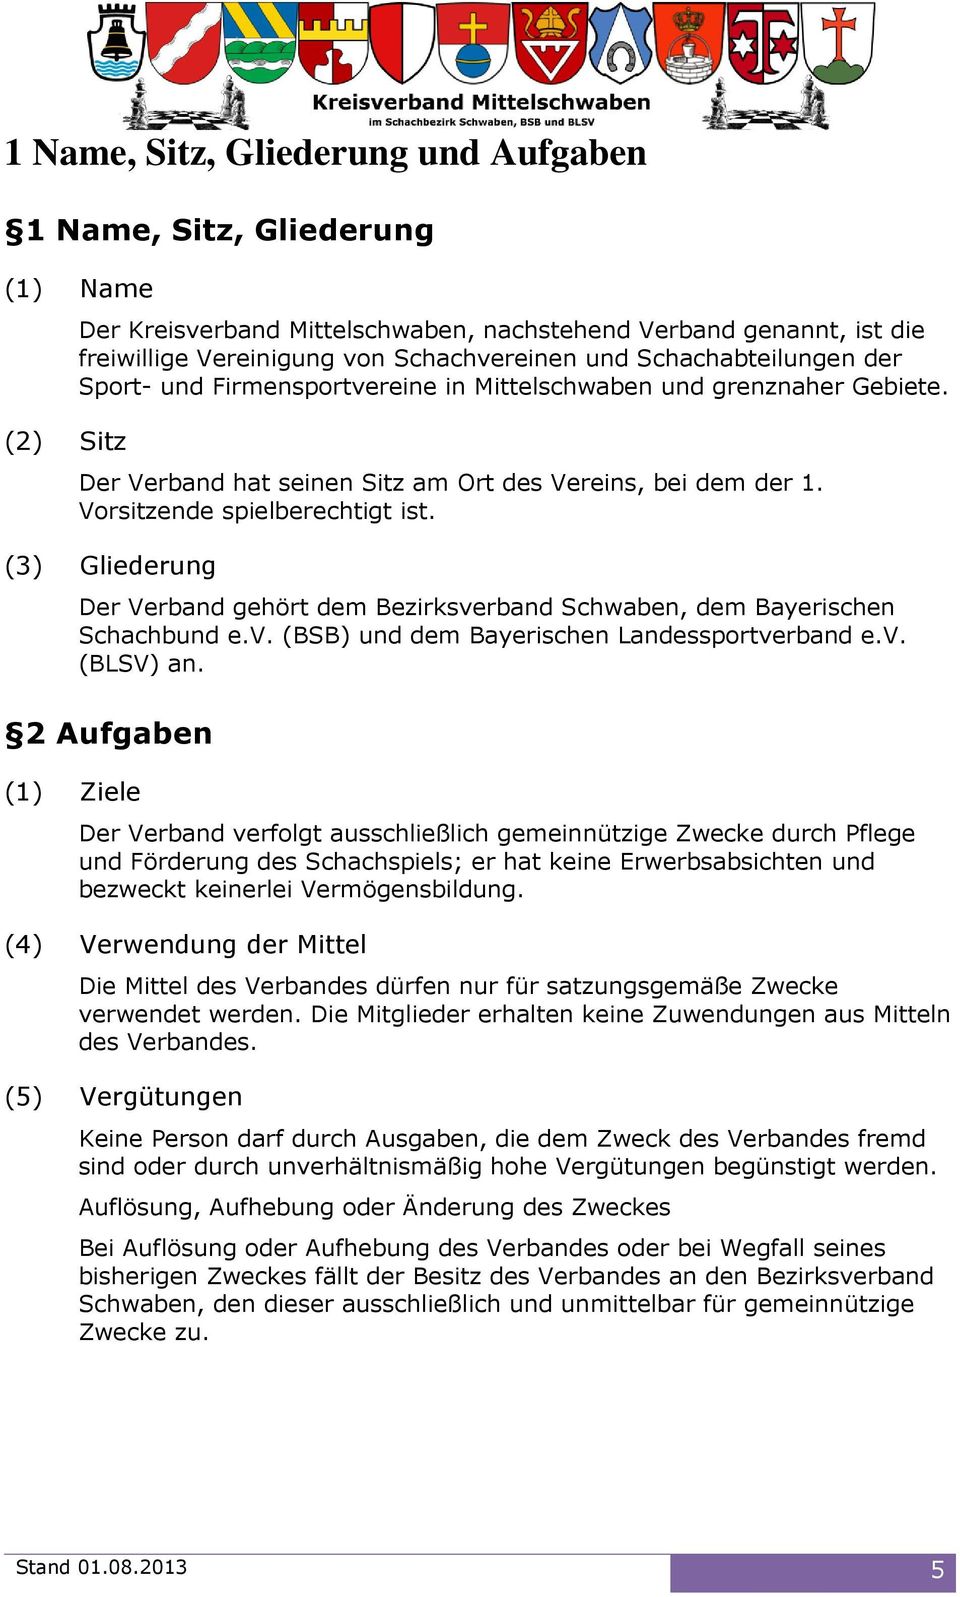 (3) Gliederung Der Verband gehört dem Bezirksverband Schwaben, dem Bayerischen Schachbund e.v. (BSB) und dem Bayerischen Landessportverband e.v. (BLSV) an.